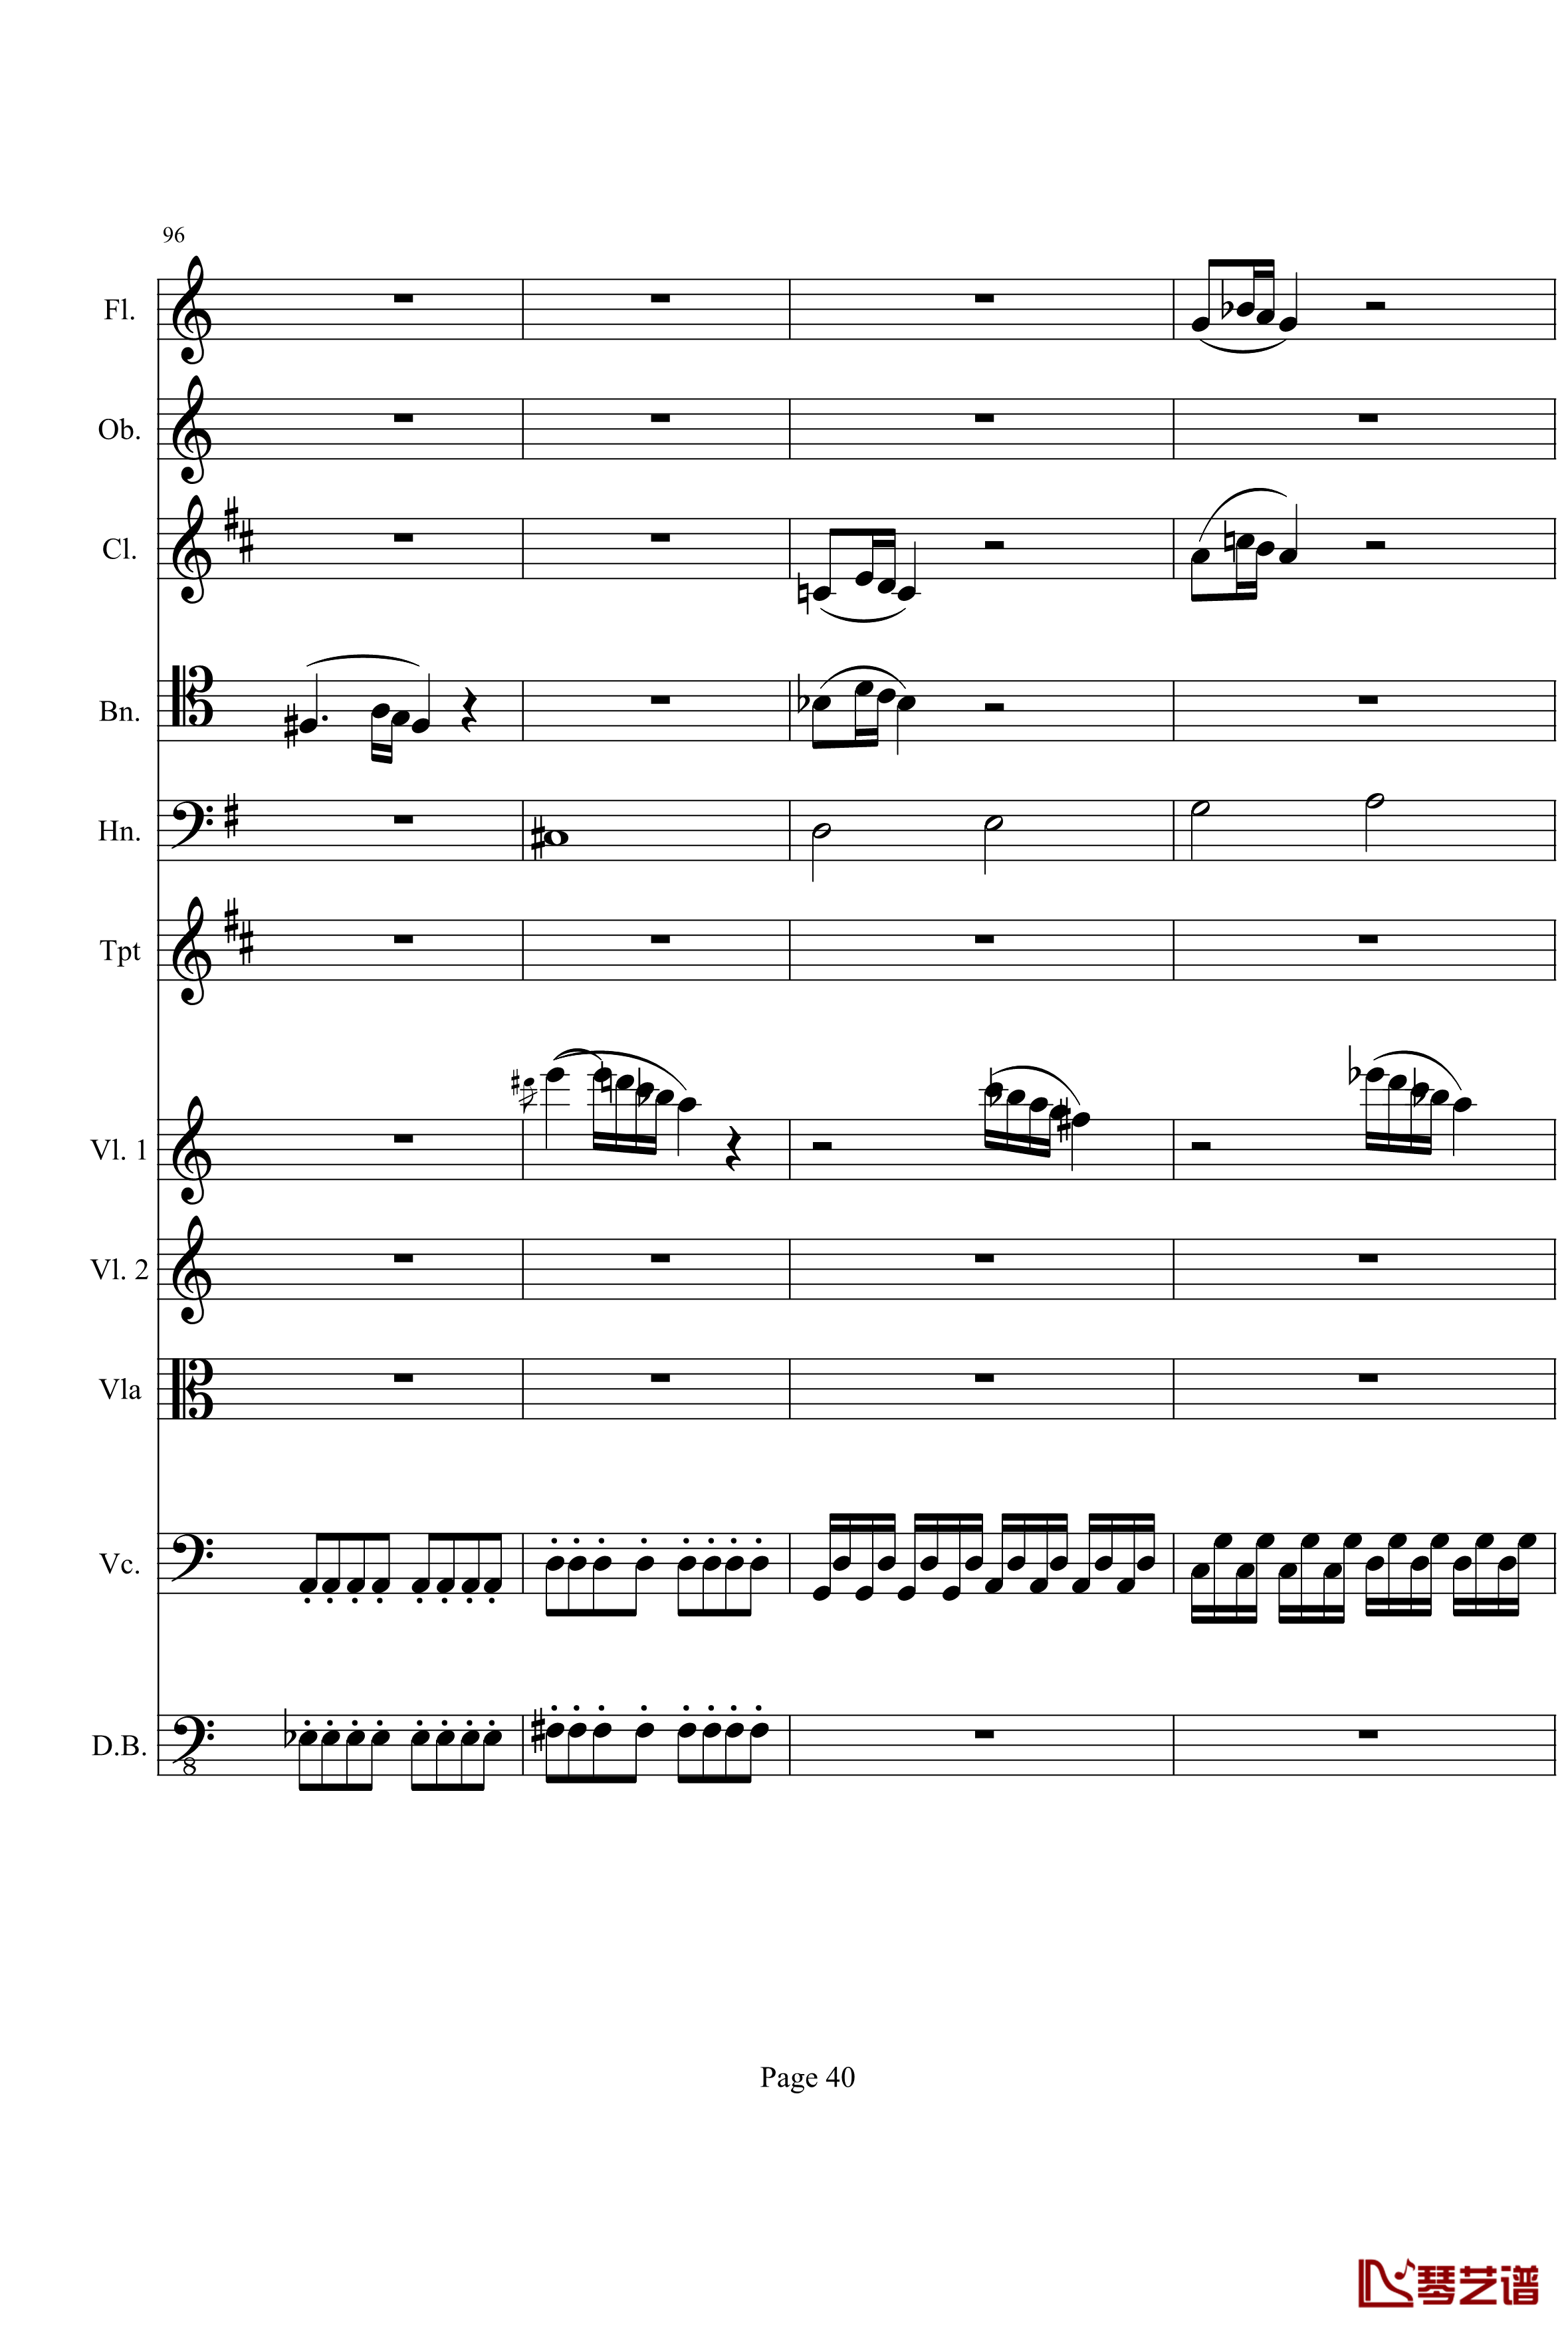 奏鸣曲之交响钢琴谱-第21-Ⅰ-贝多芬-beethoven40